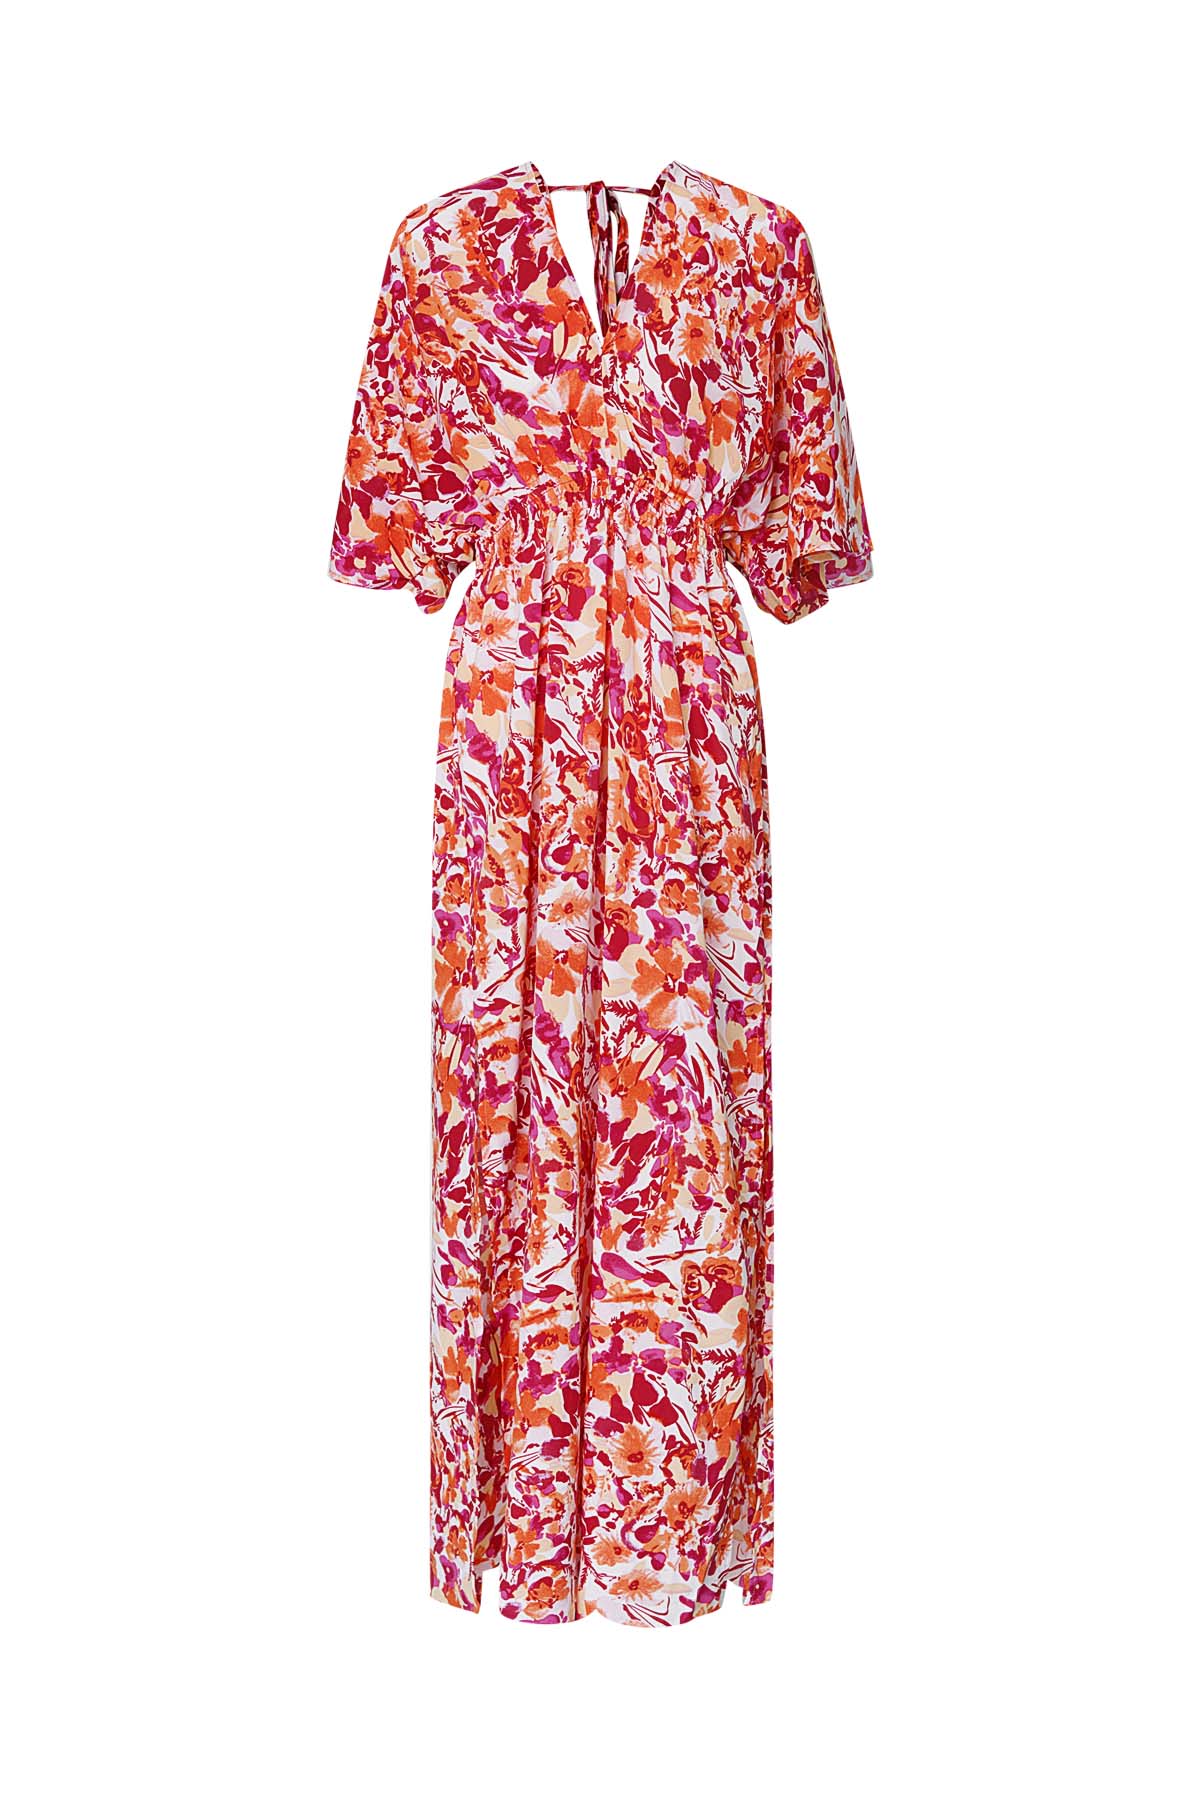 Kleid Blumen tailliert - orange/pink